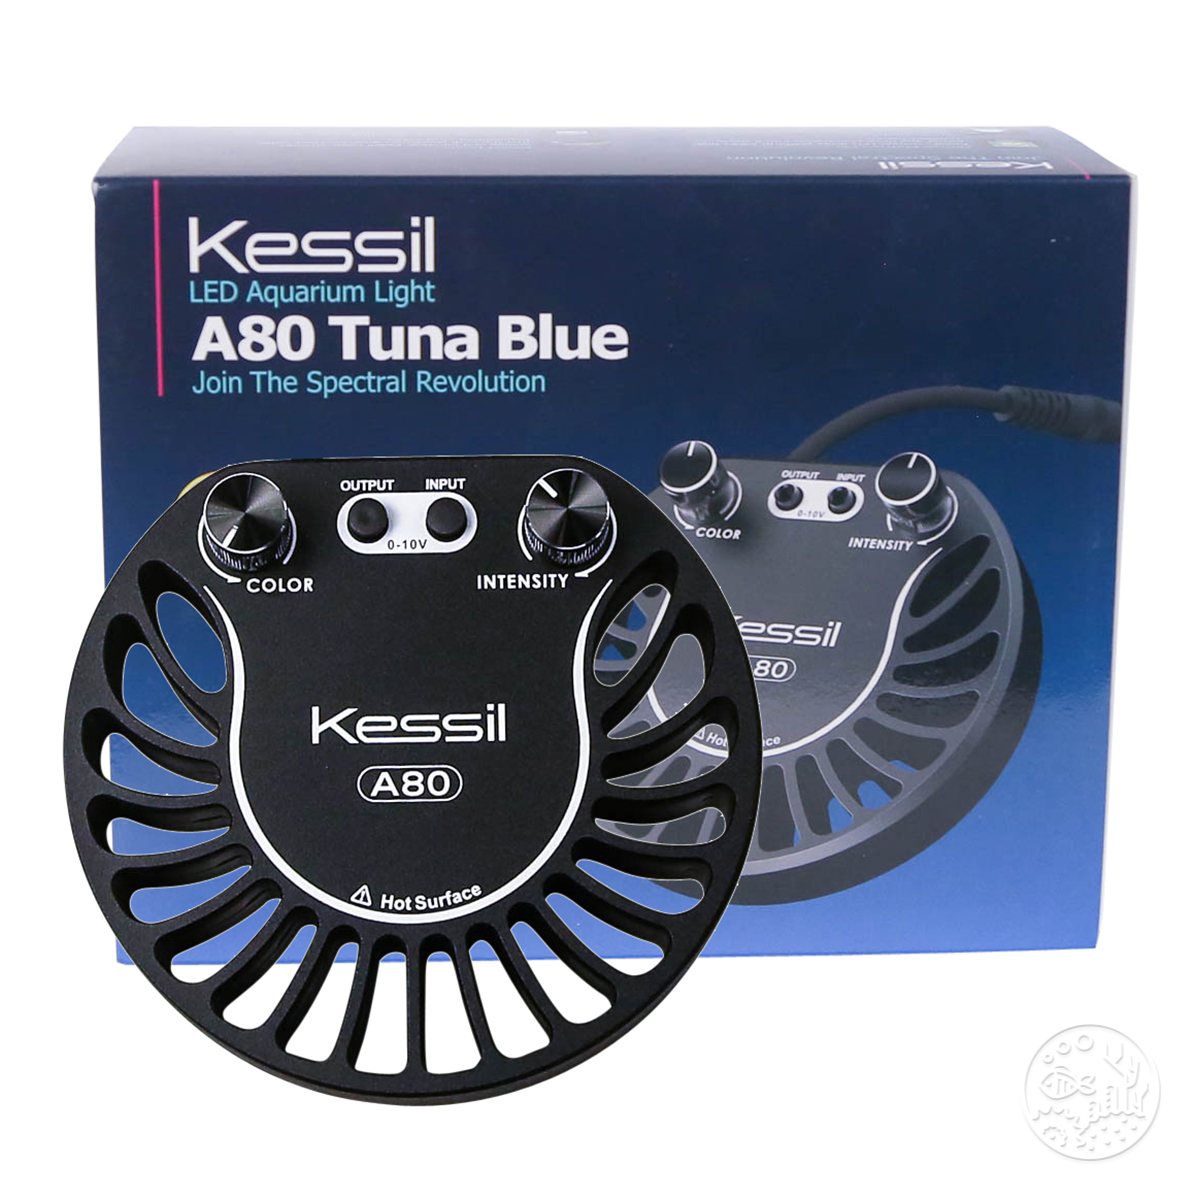 kessil 160 tuna blueとグースネックとコントローラー使用出力max20